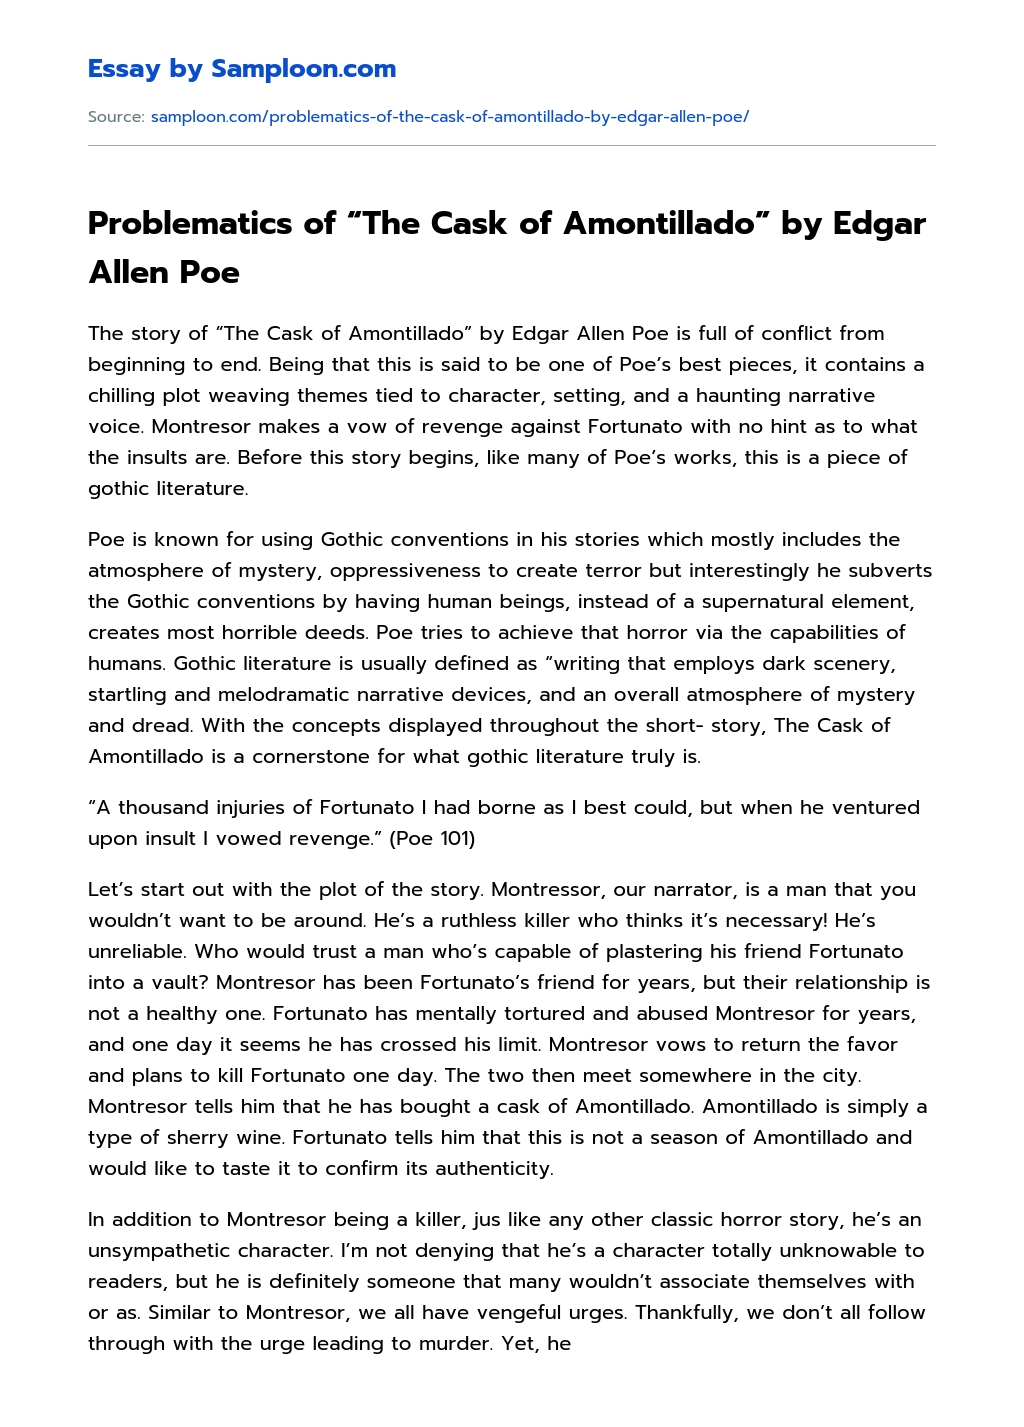 Problematics of “The Cask of Amontillado” by Edgar Allen Poe Summary essay